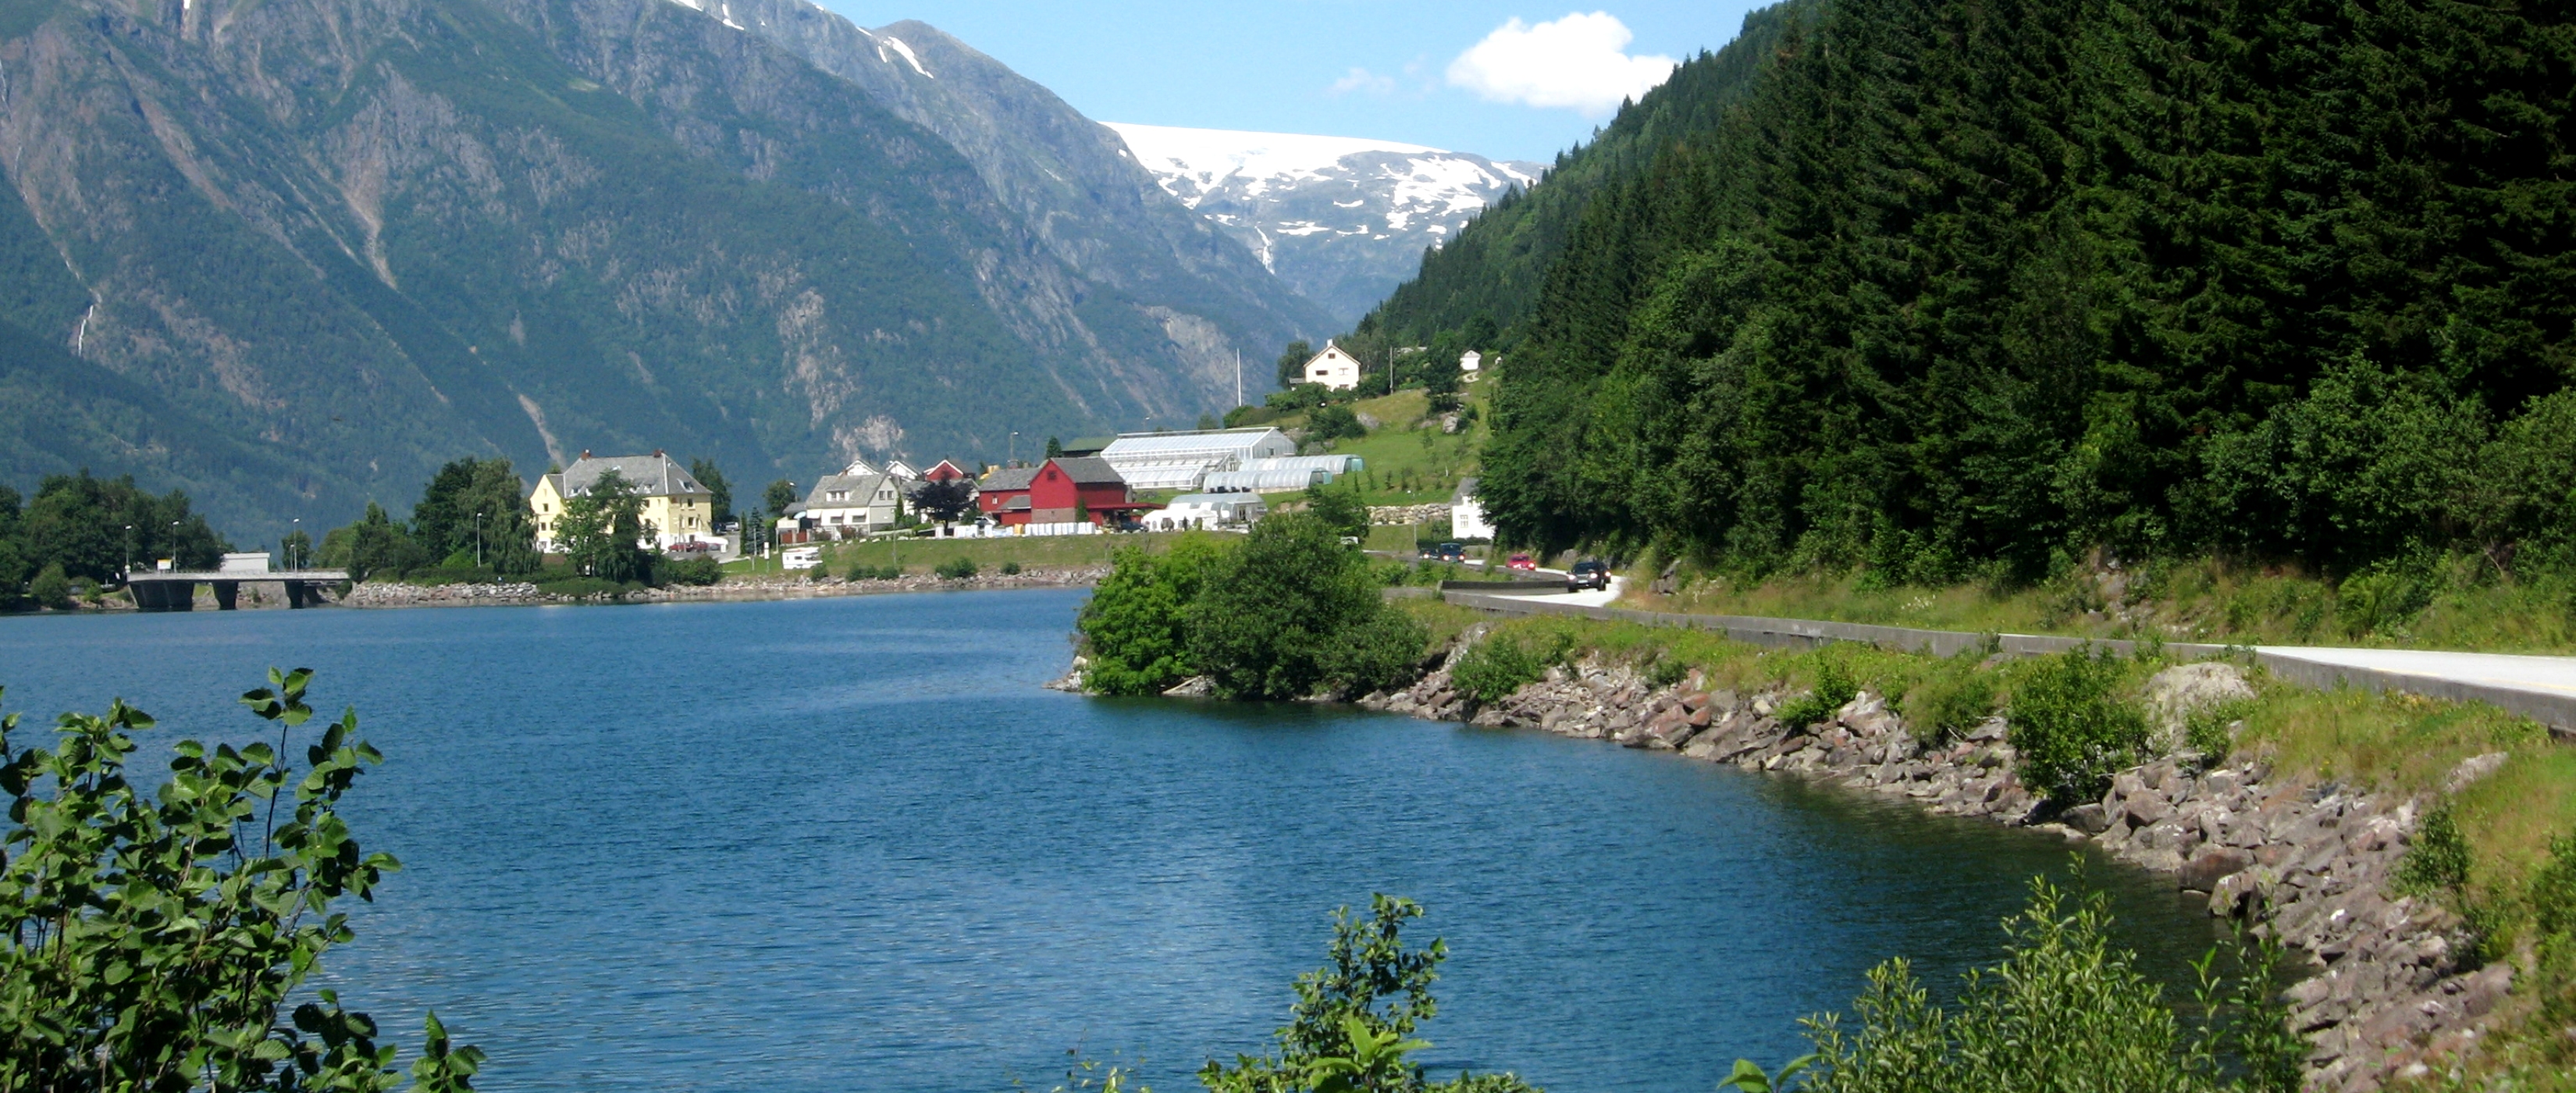 Blick auf den Fjord - Lupe Reisen